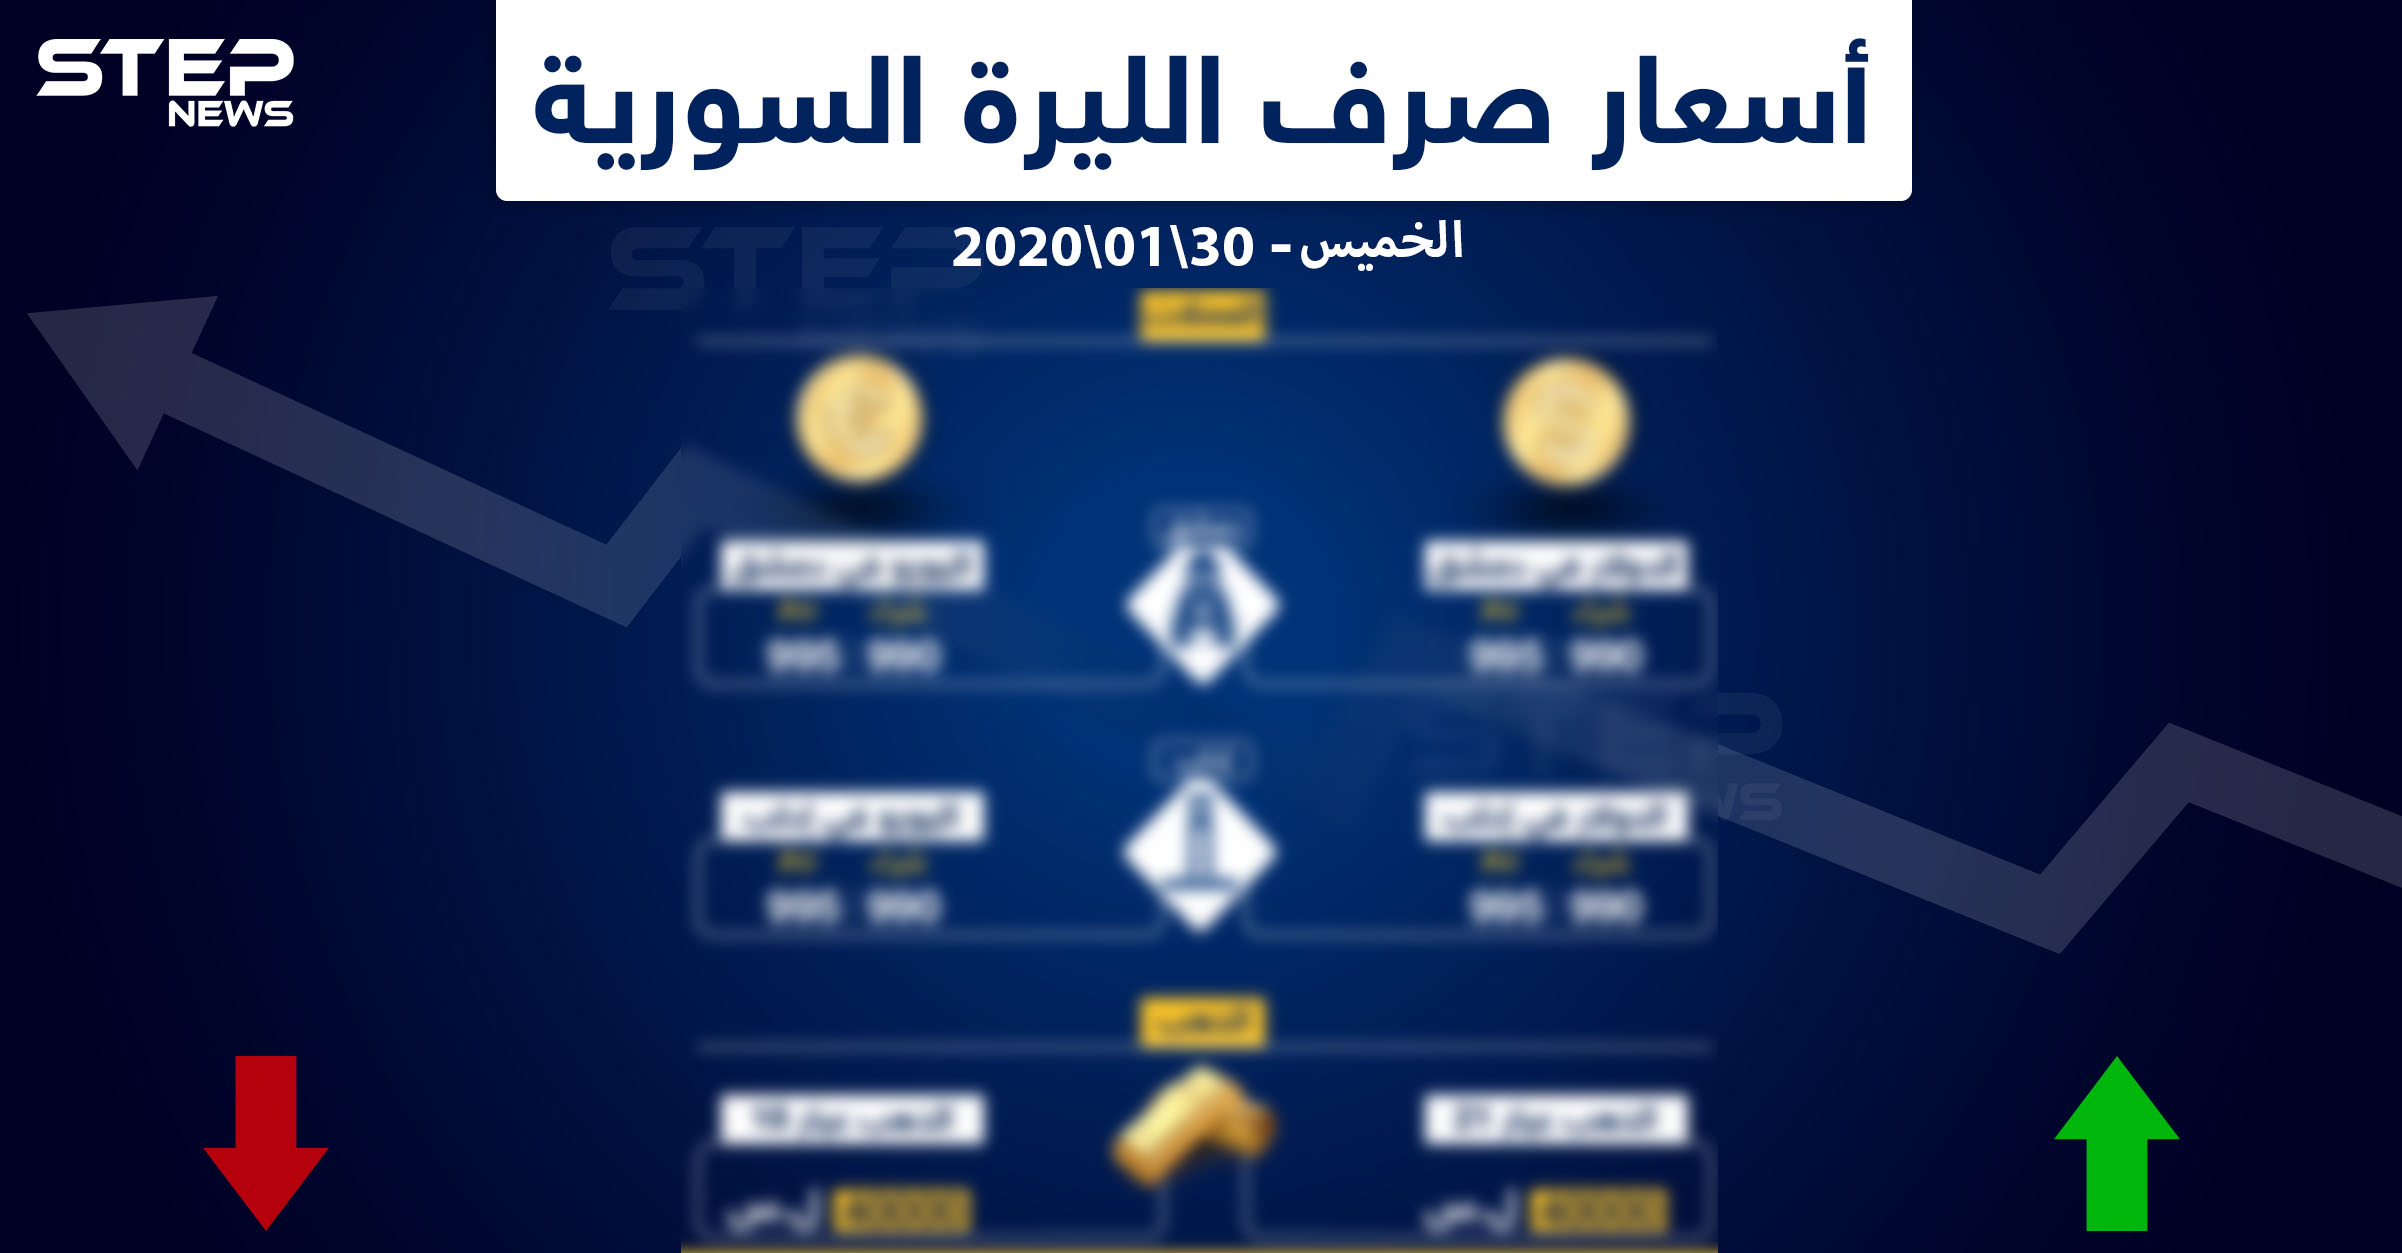 أسعار الذهب والعملات في سوريا ليوم الخميس 30 1 2020 وكالة ستيب